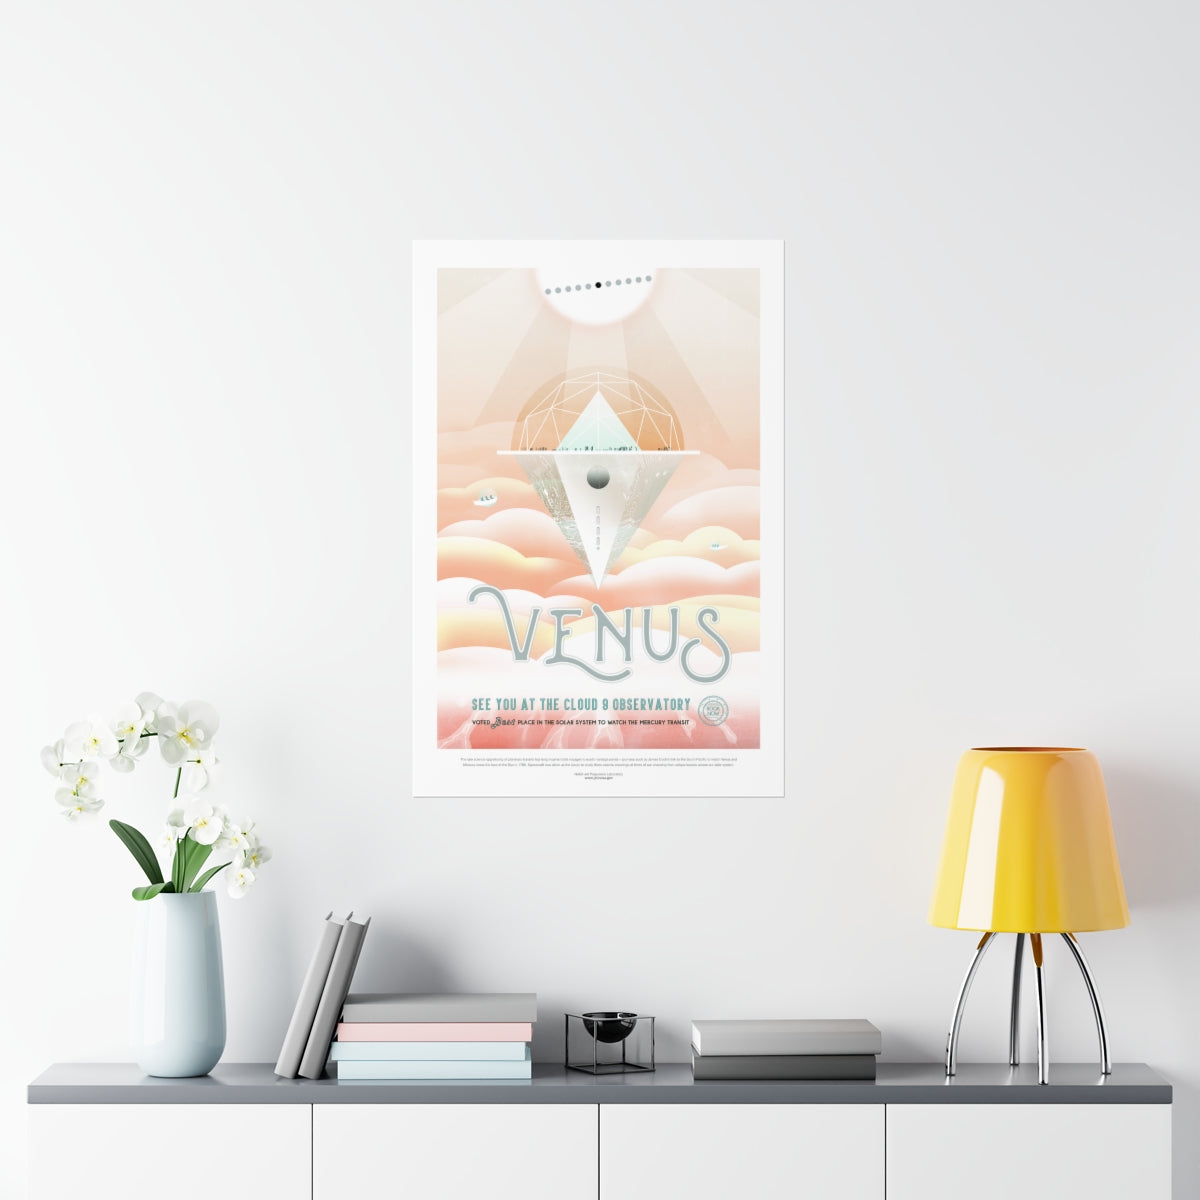 NASA - Visions of the Future : Venus